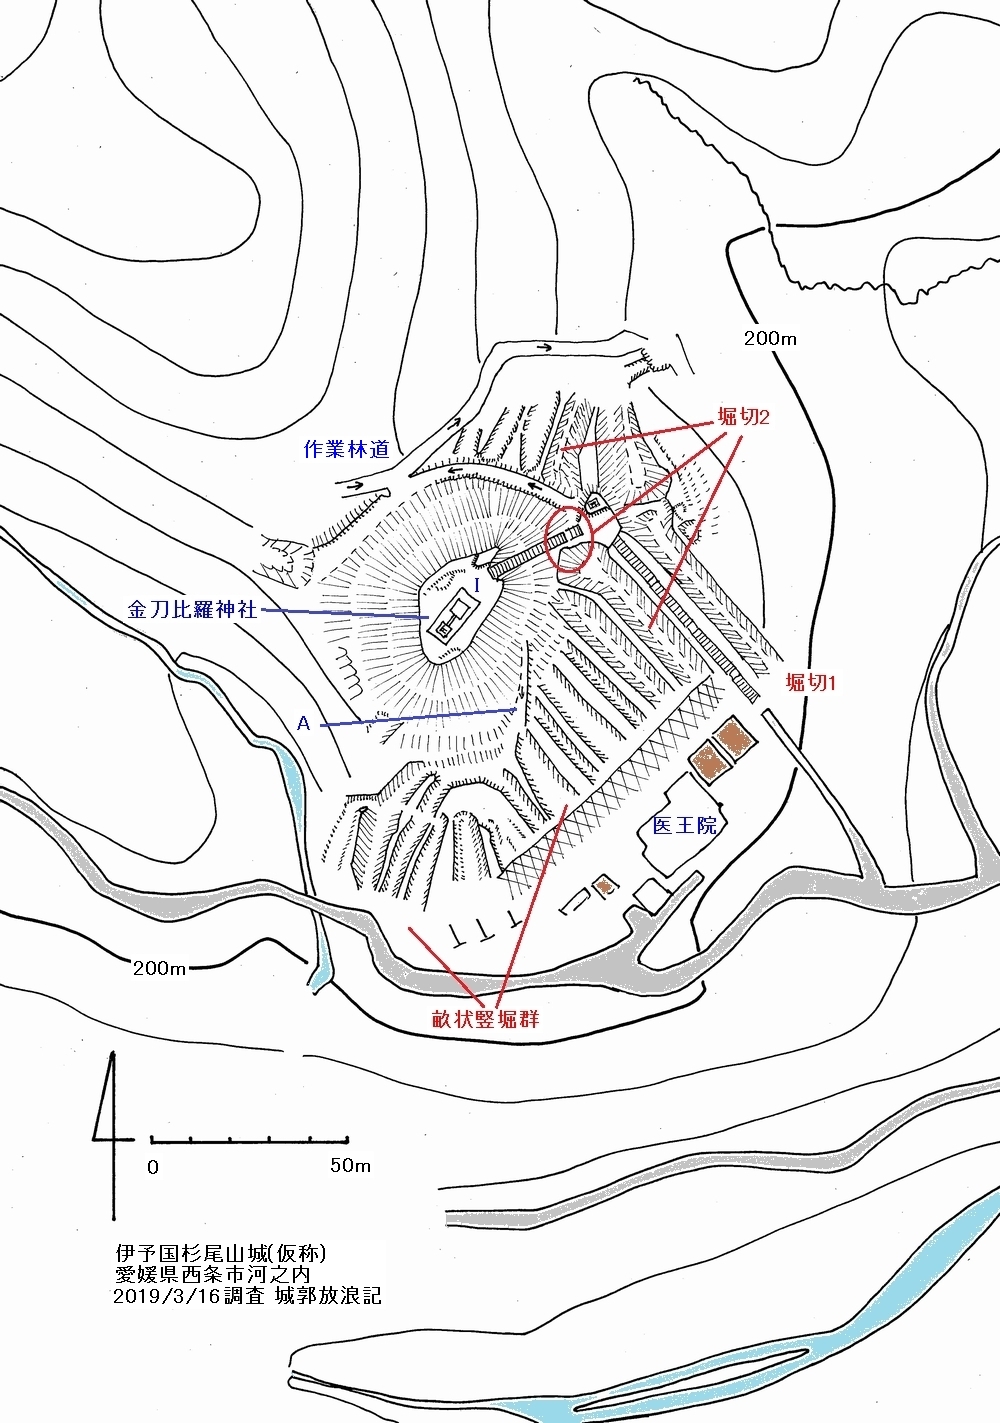 伊予 杉尾山城の縄張図